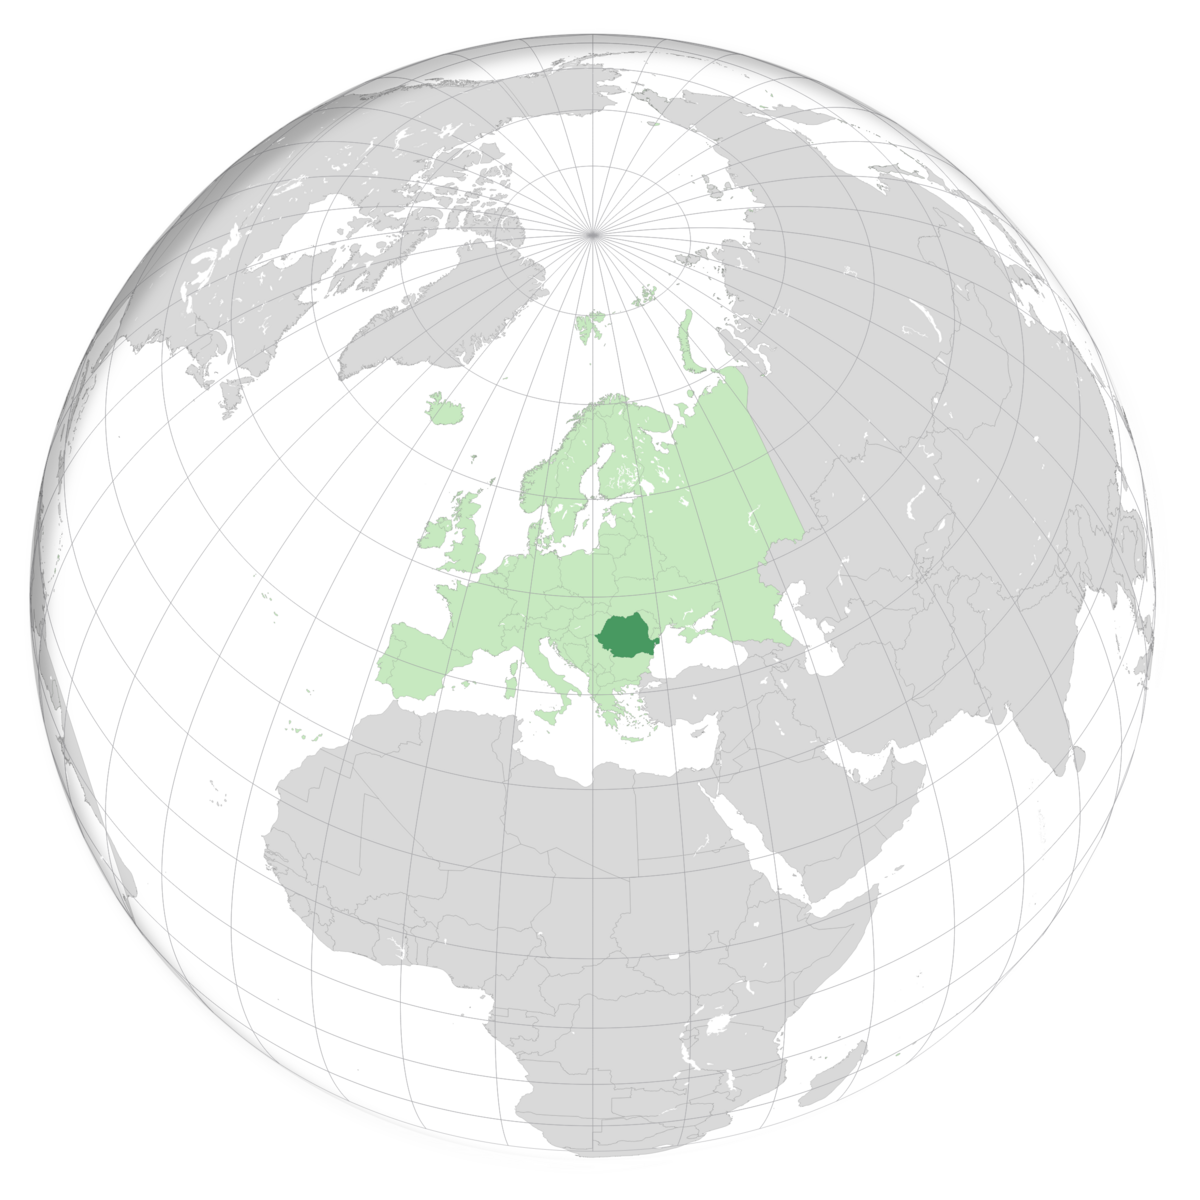 plassering av Romania på jordkloden. Kart